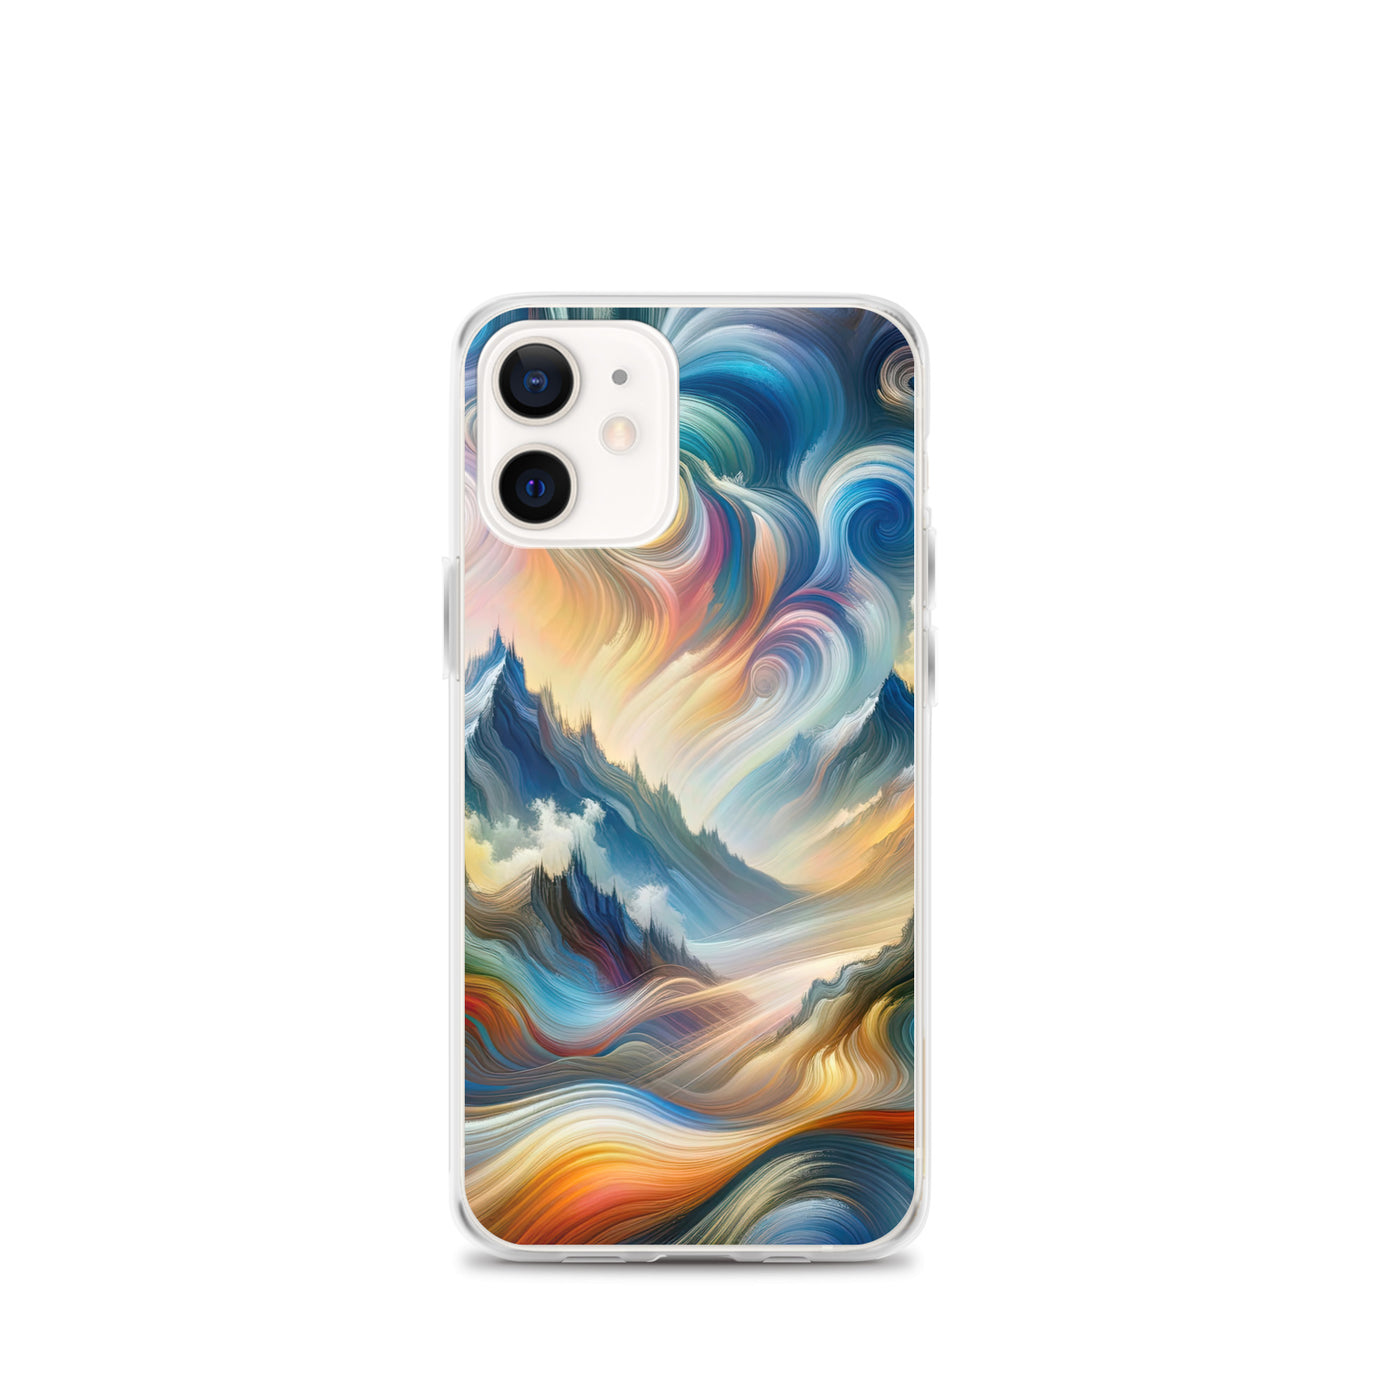 Ätherische schöne Alpen in lebendigen Farbwirbeln - Abstrakte Berge - iPhone Schutzhülle (durchsichtig) berge xxx yyy zzz iPhone 12 mini